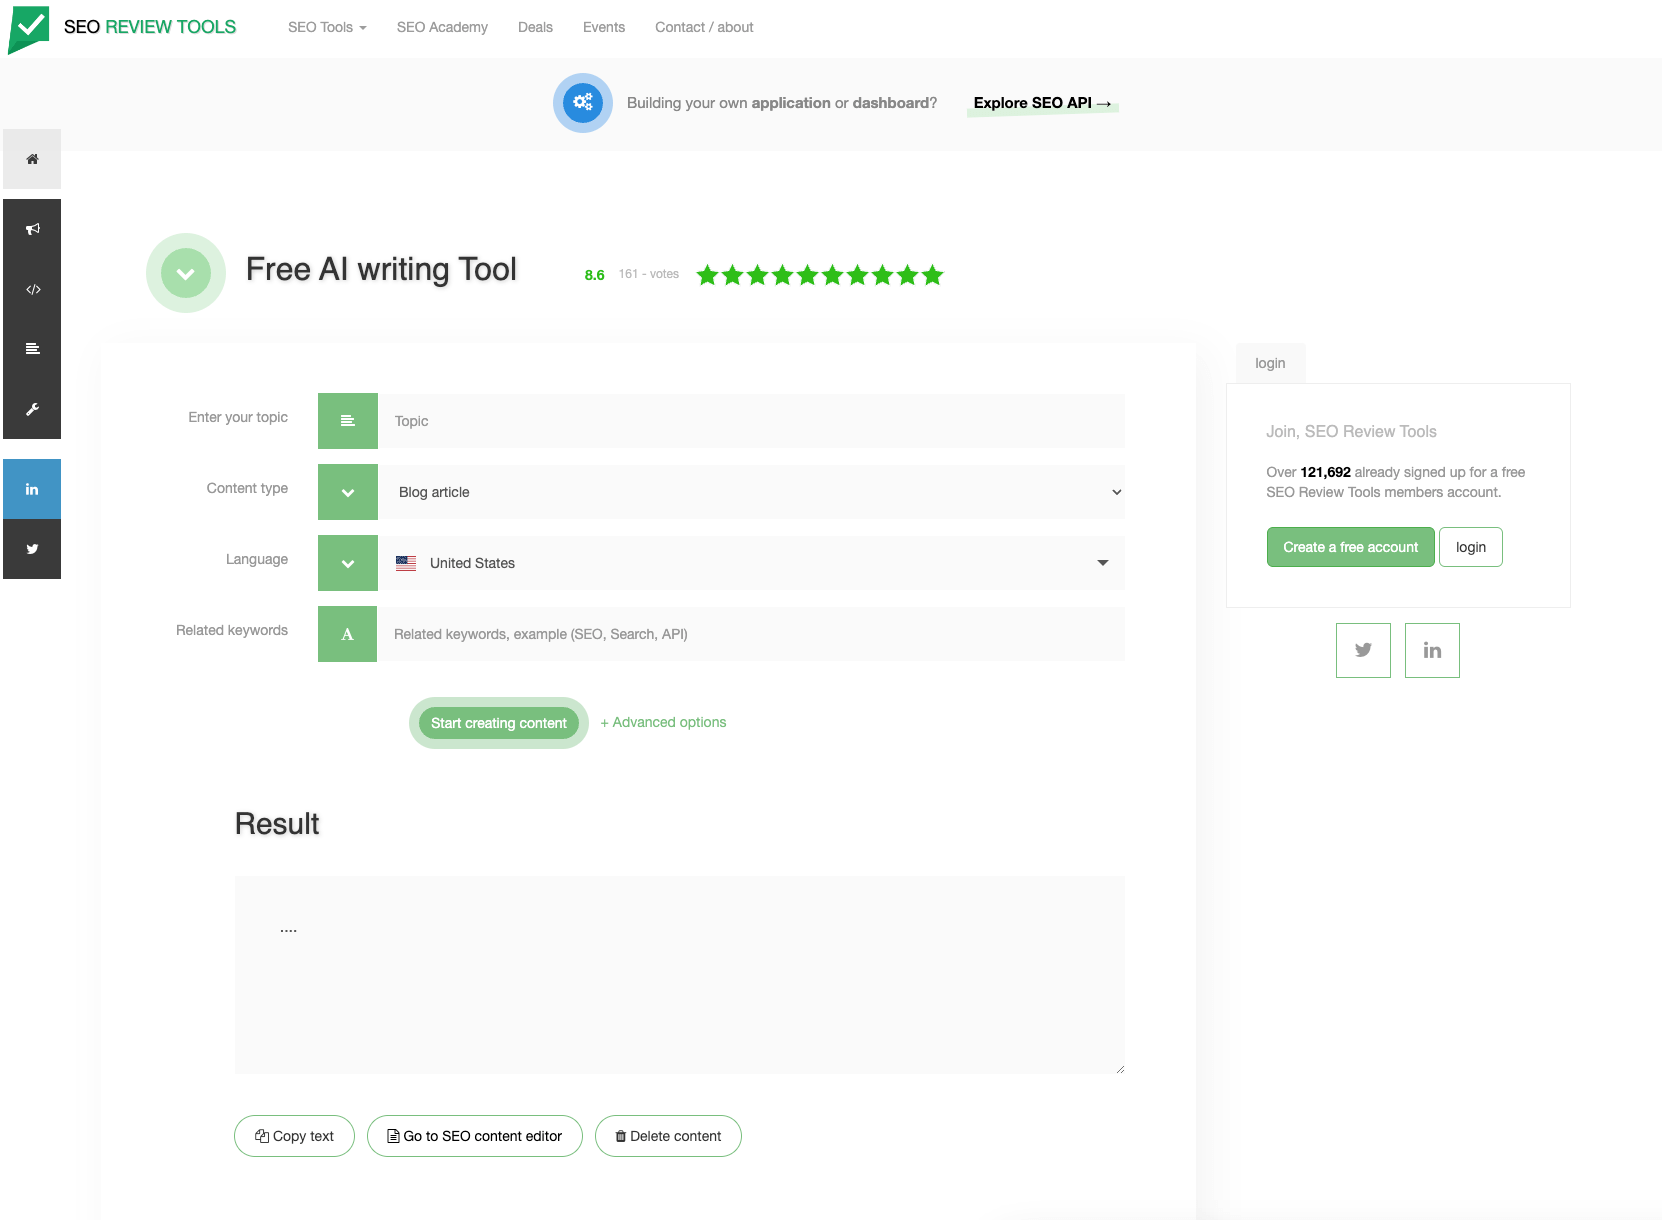 Free AI writing tool